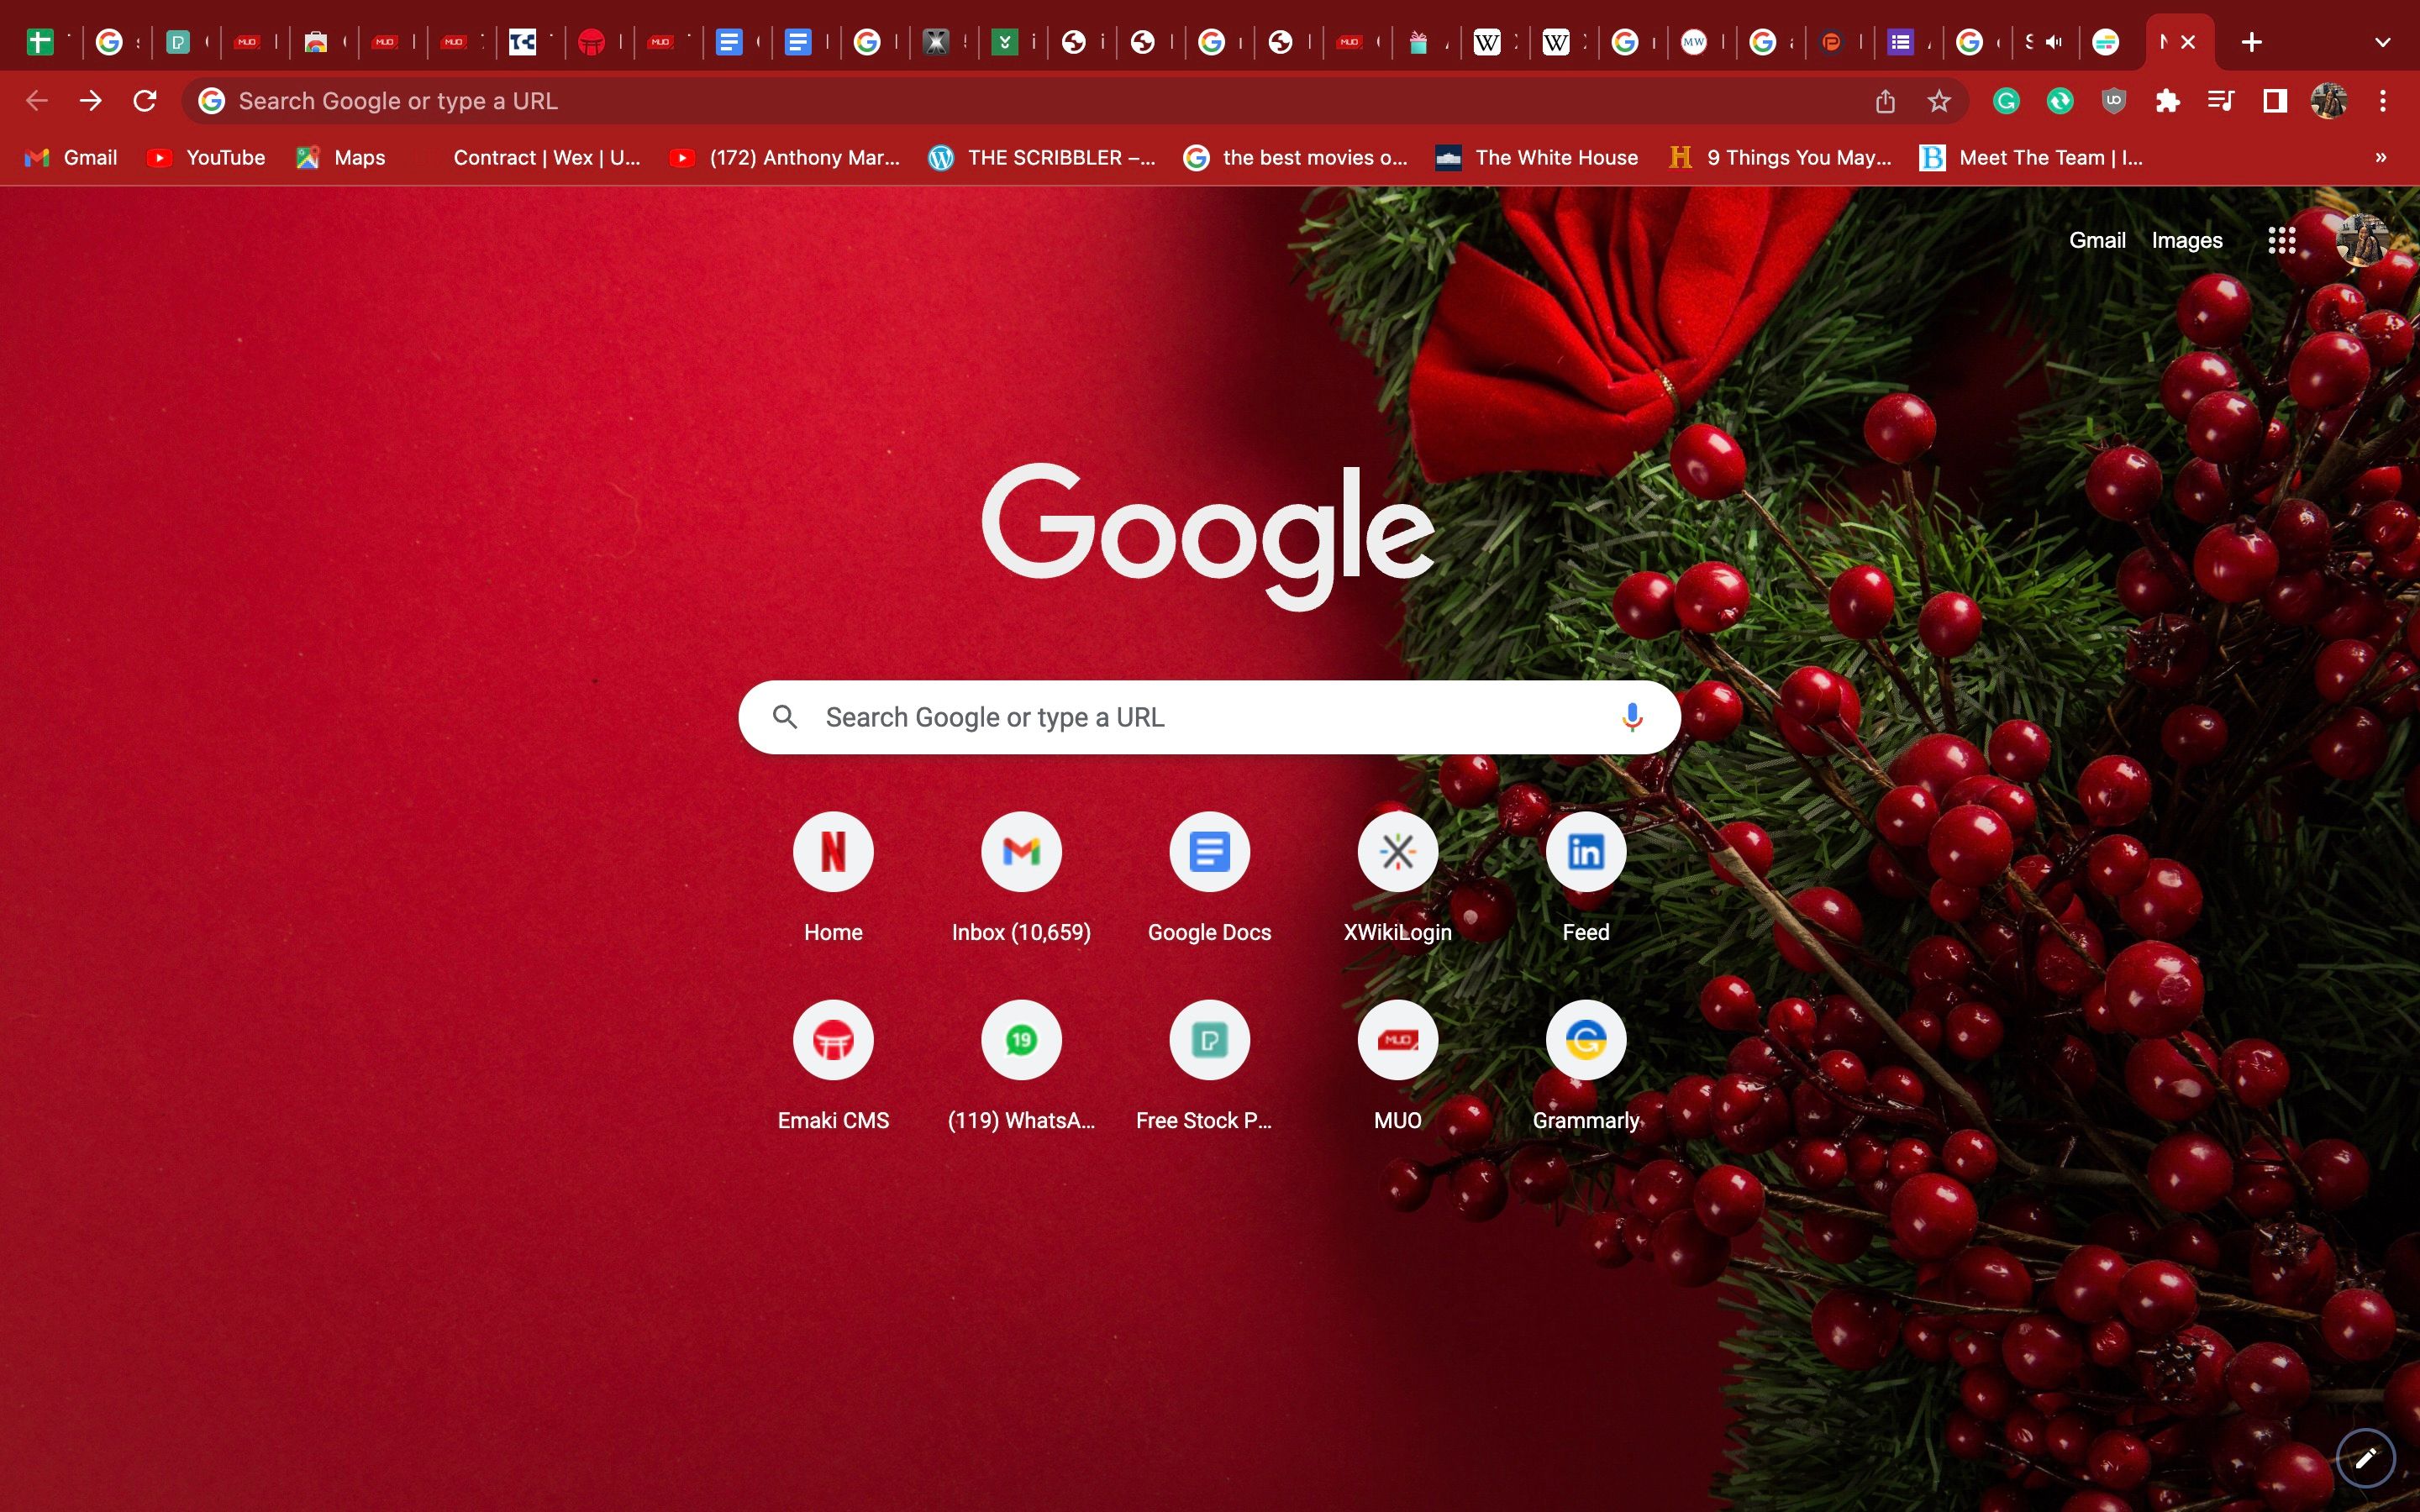 Personalizando o Google Chrome no macOS